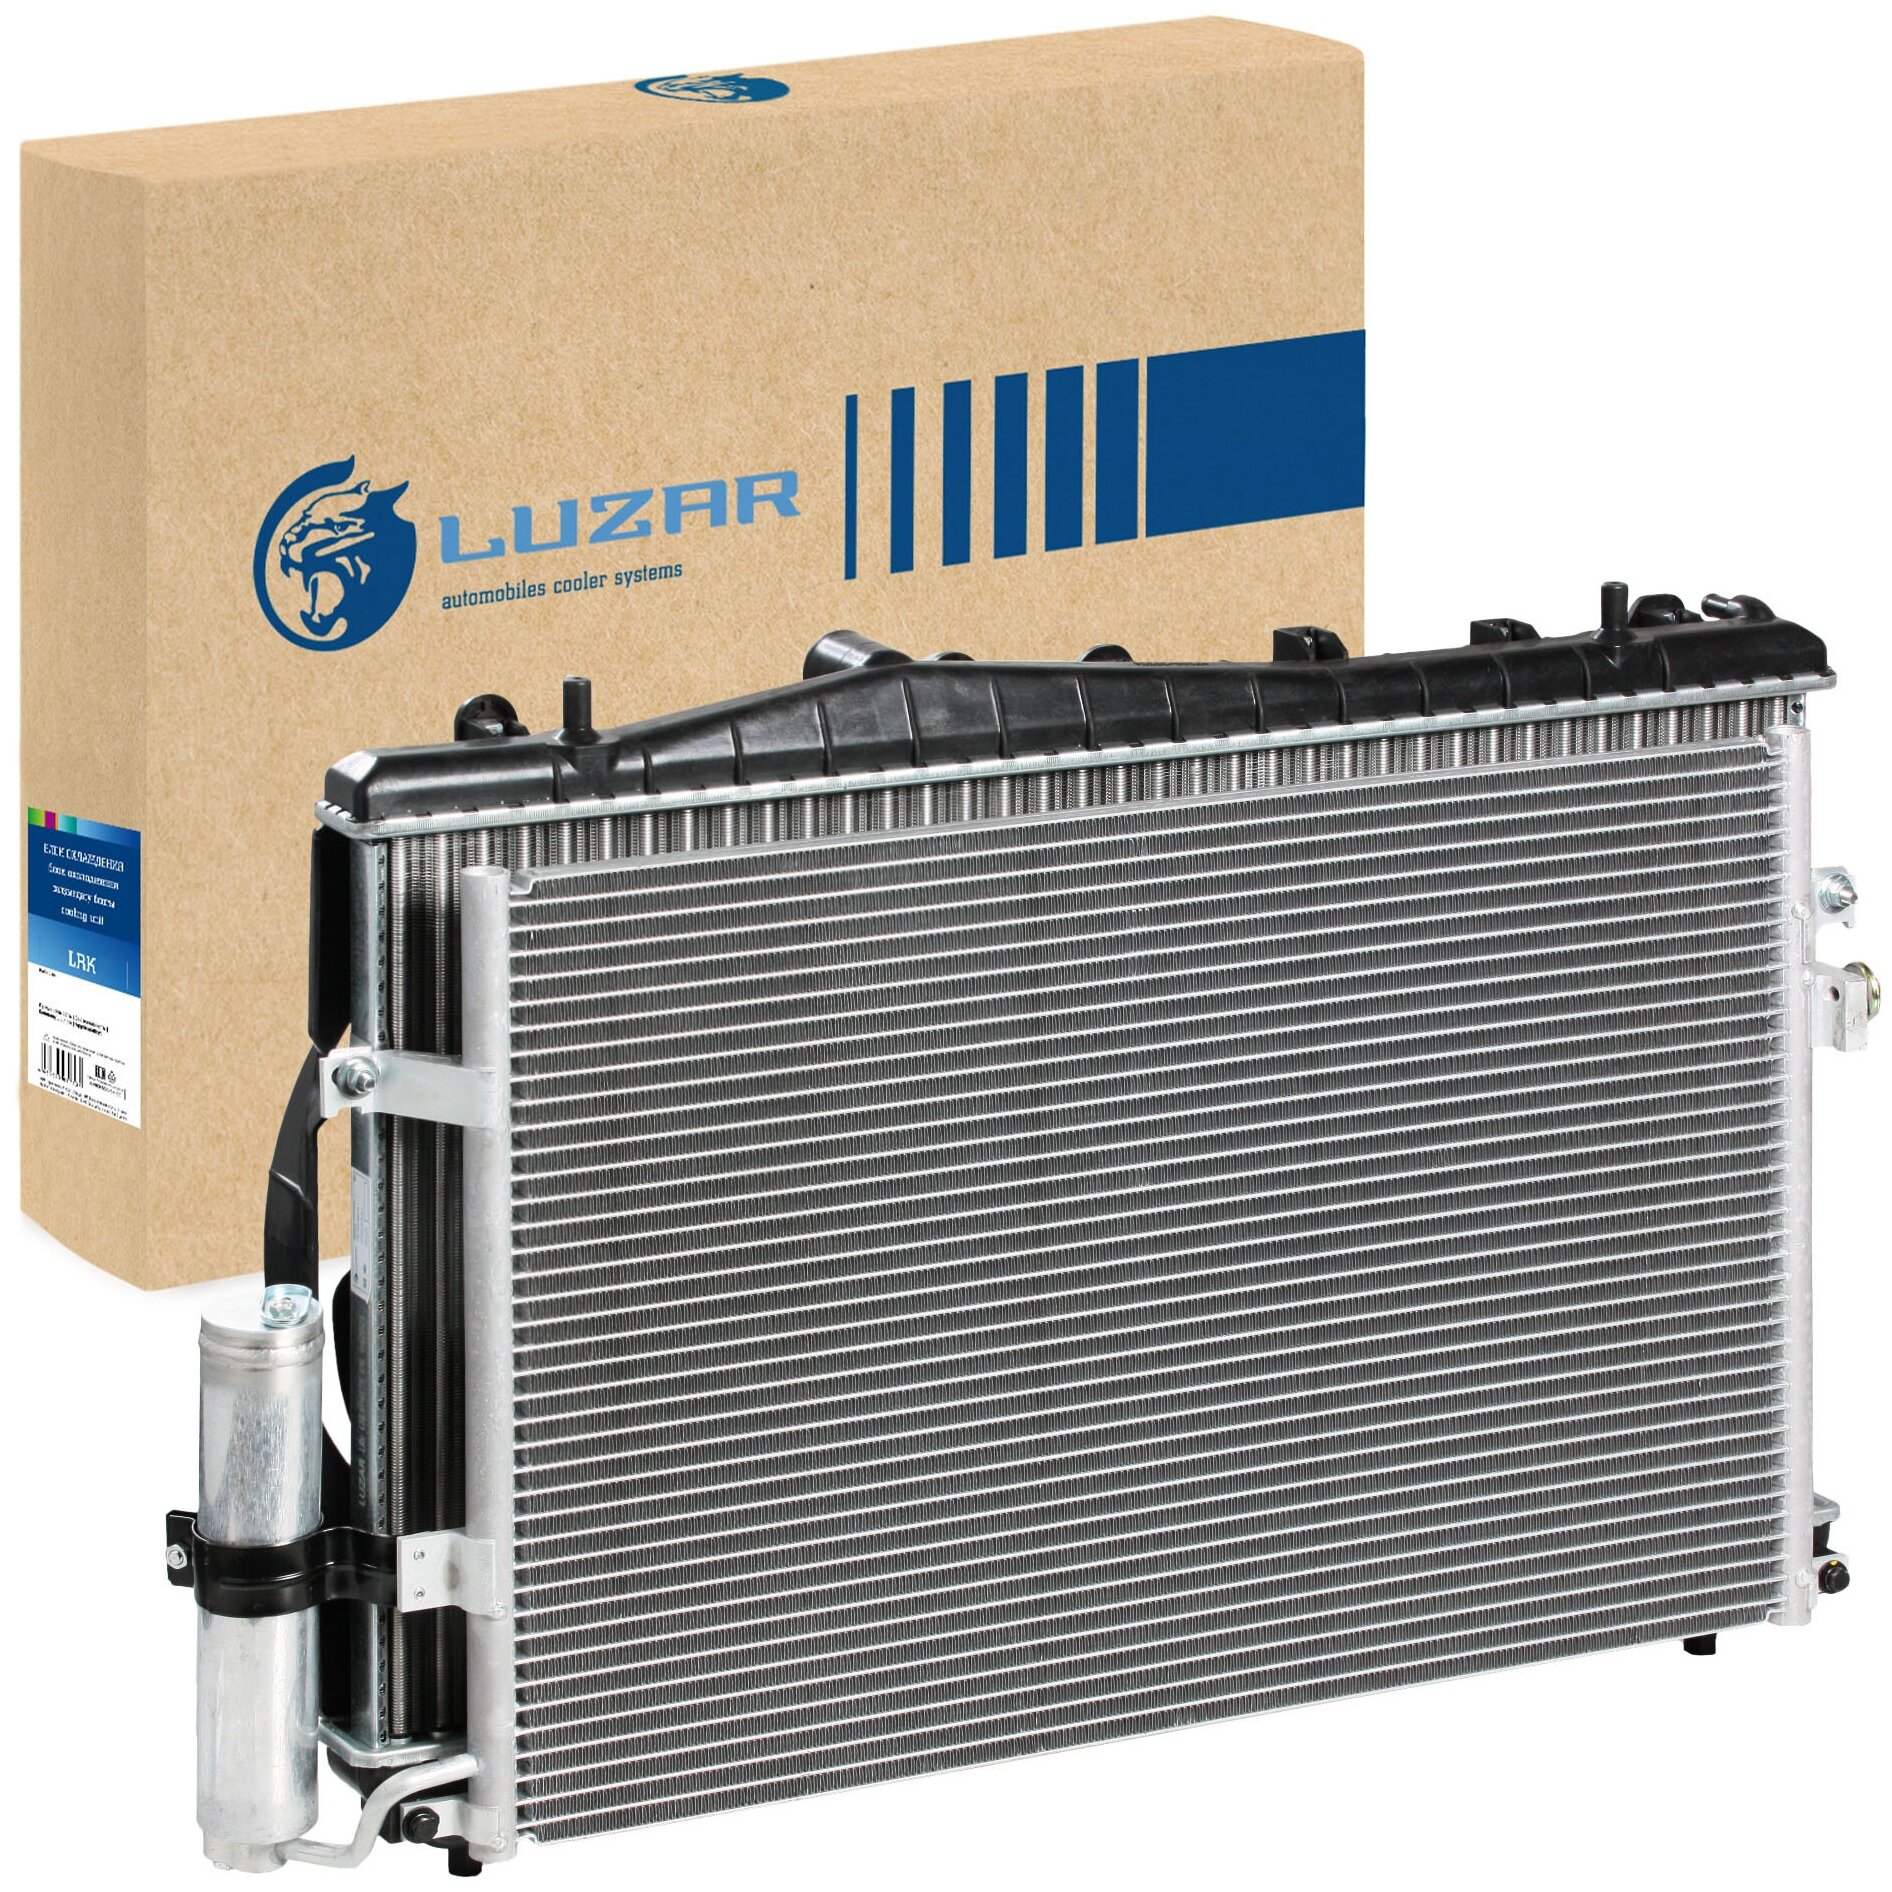 Блок охлаждения (радиатор+конденсор+вентиляторы) для автомобилей Lacetti (04-) 1.4i/1.6i/1.8i MT LRK 0578 LUZAR